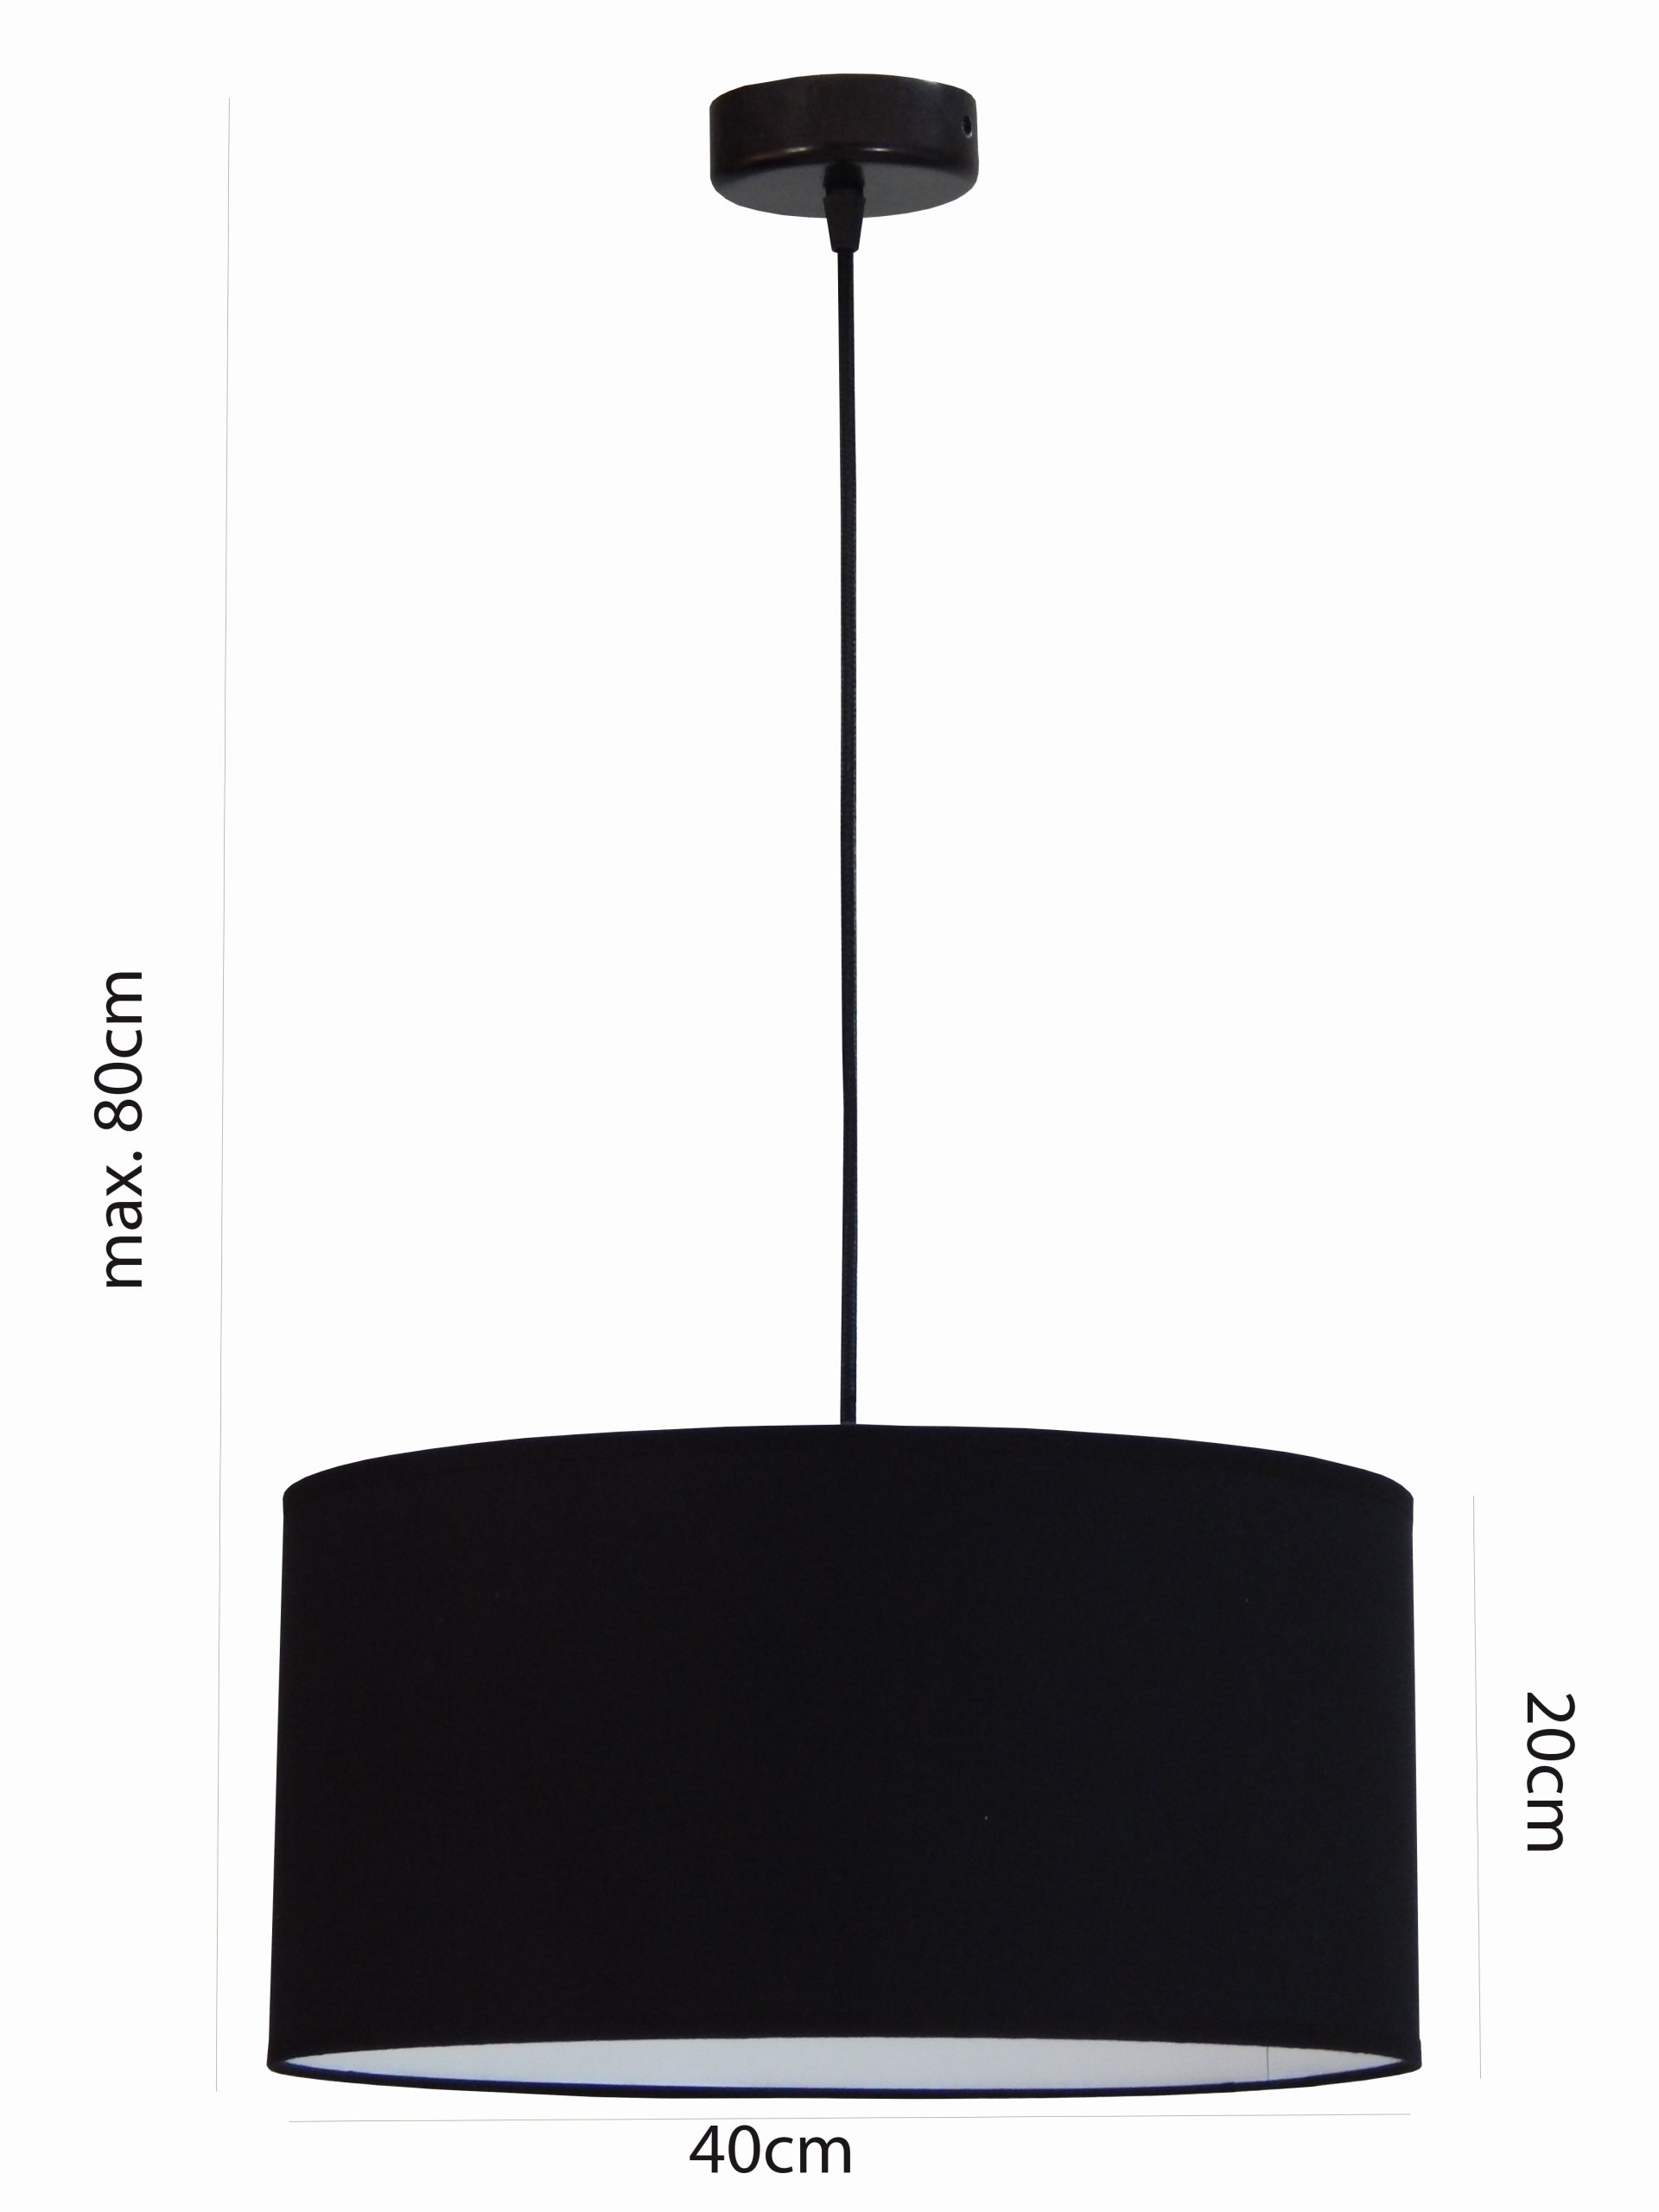 LUBŲ LEMPAS tips: ZW-1 LED COLORS, paredzēts WYBO maitinimo tinklus